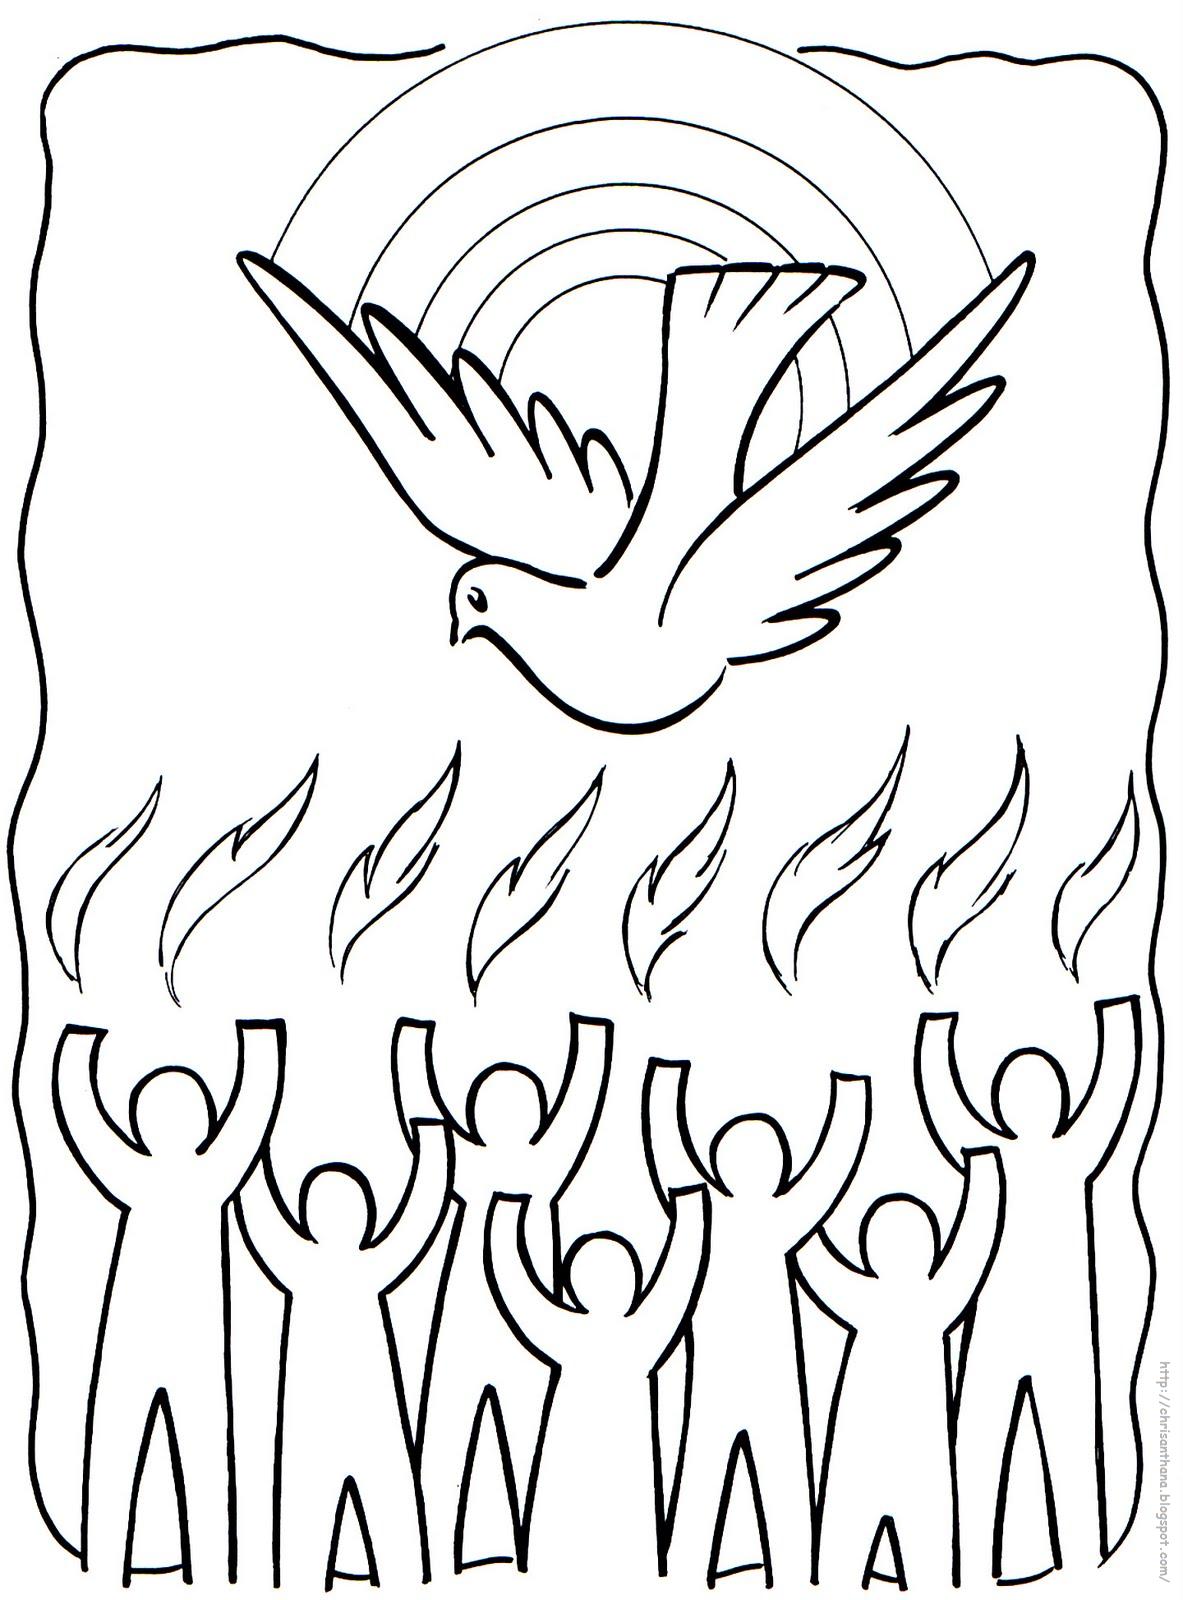 Sekolah Minggu Ceria: Pentakosta hari turunnya Roh Kudus